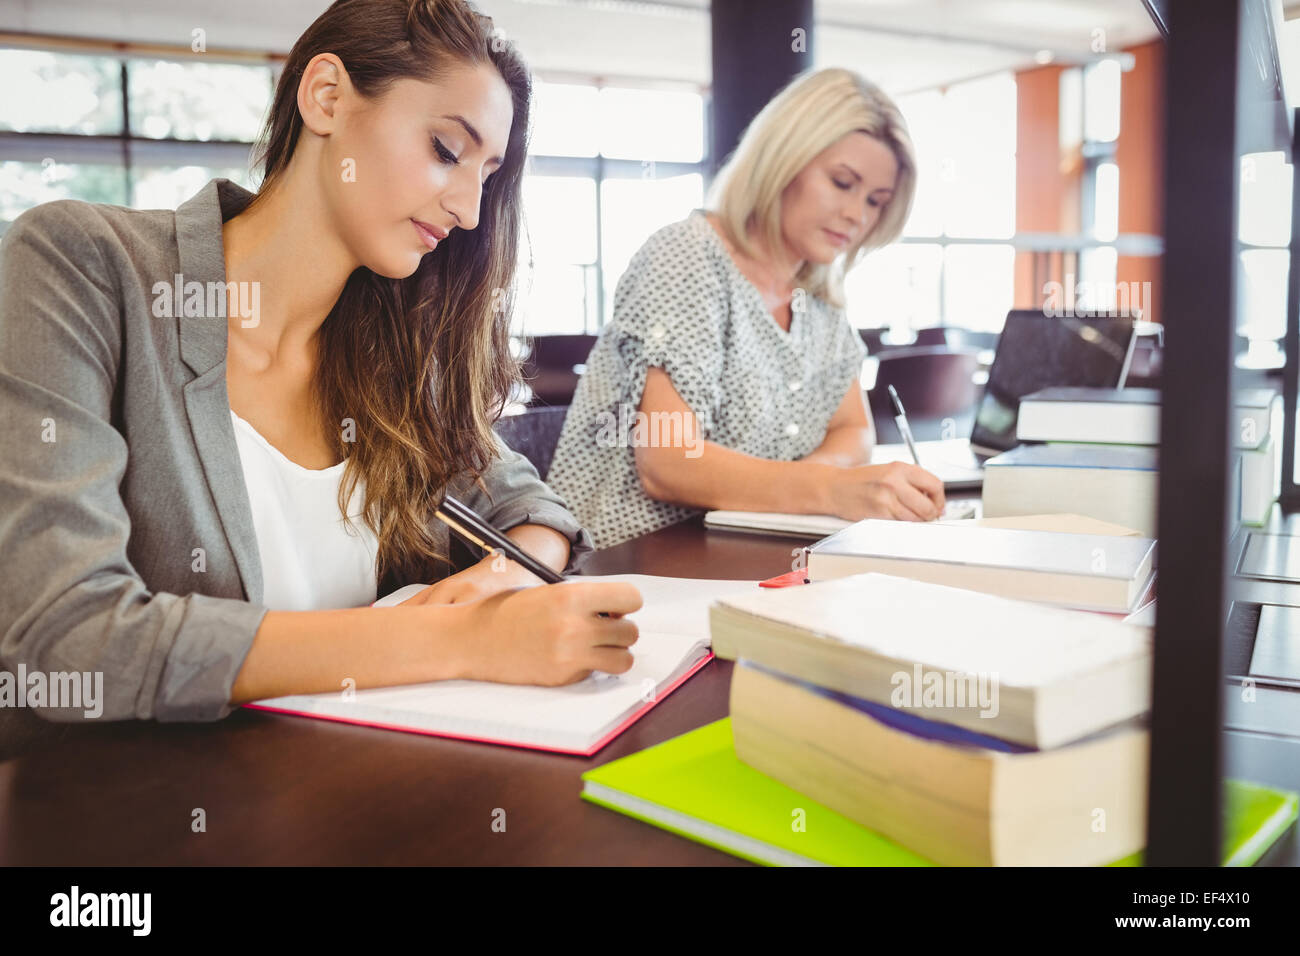 Reift Weibchen Studenten schreiben von Notizen am Schreibtisch Stockfoto